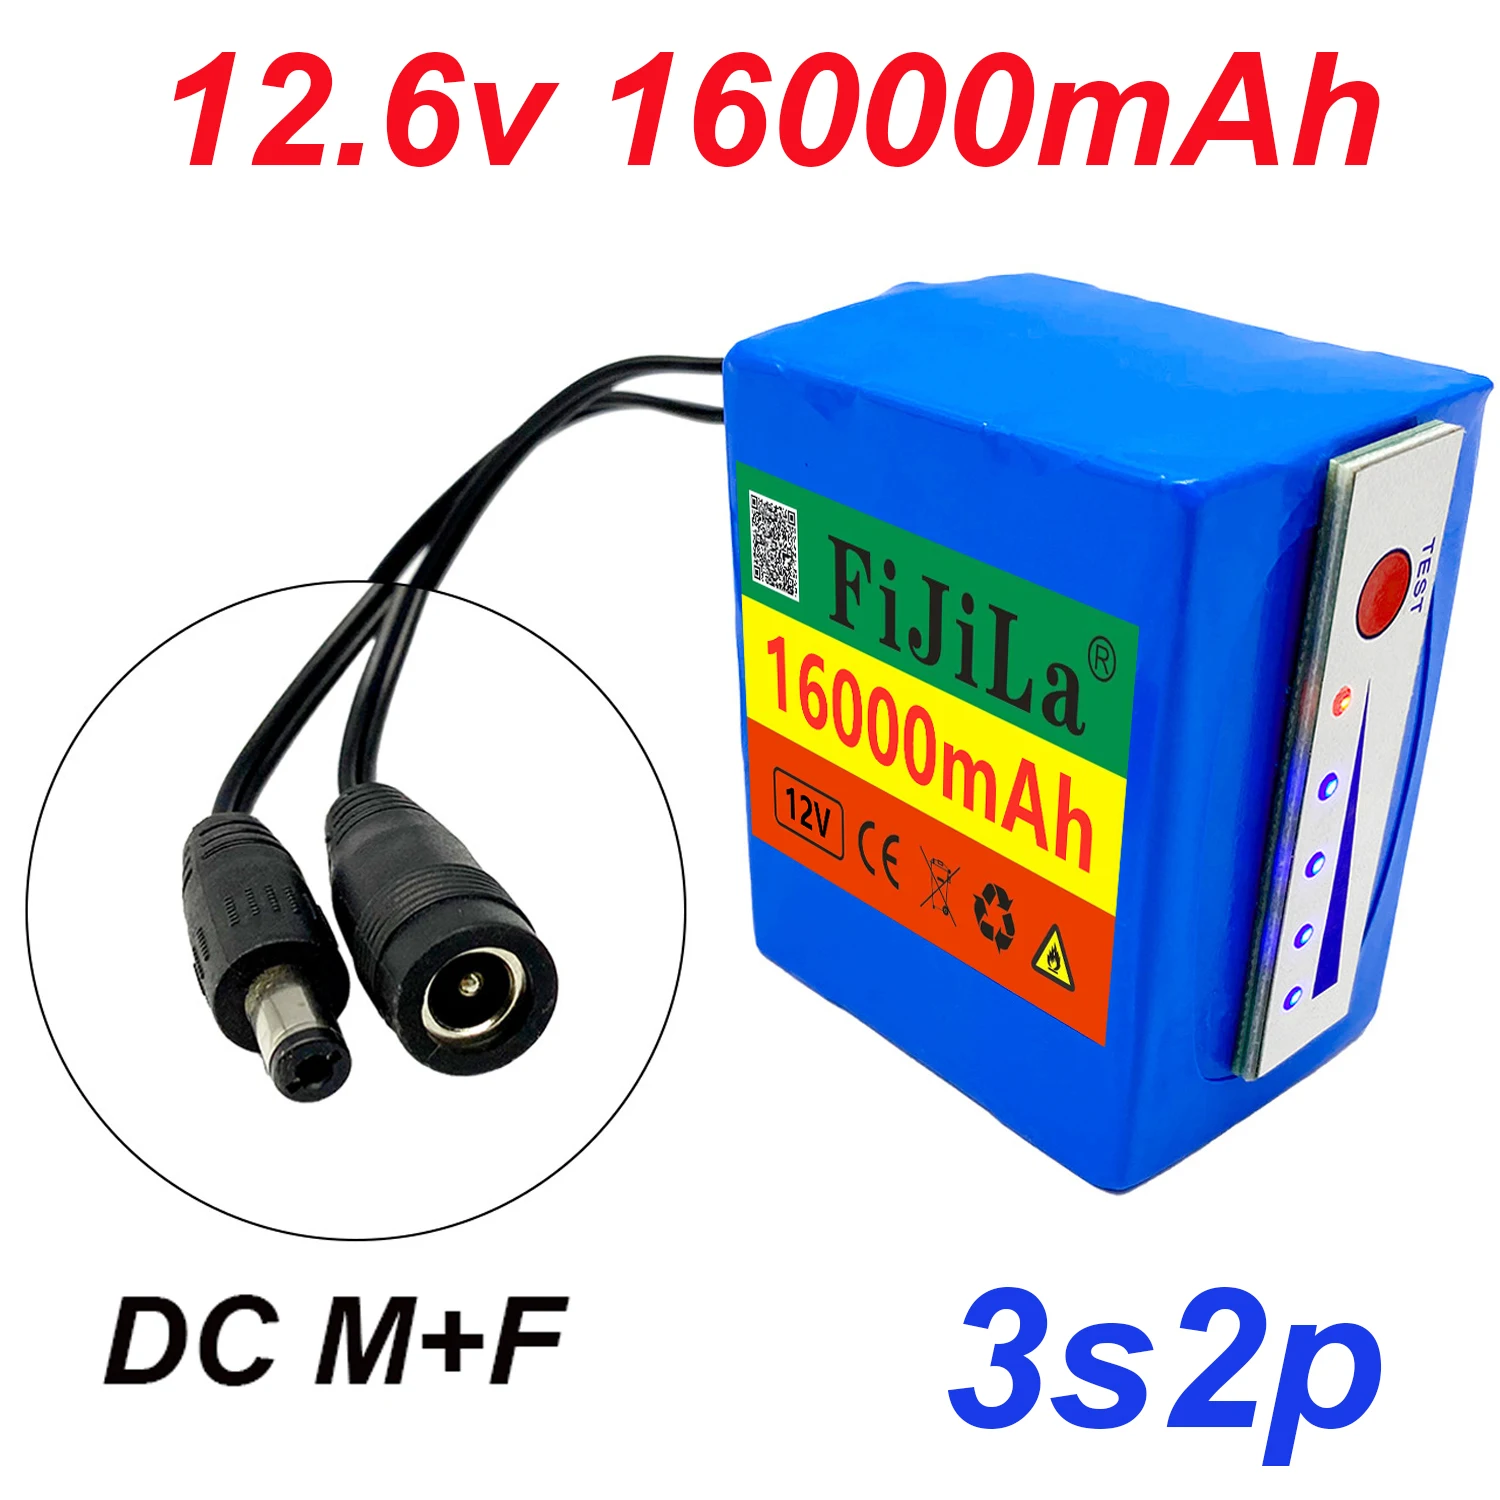 

11.1v/12.6v lithium battery 12v 18650 3s2p battery 16000mah indicator light for fish detector underwater fishing camera